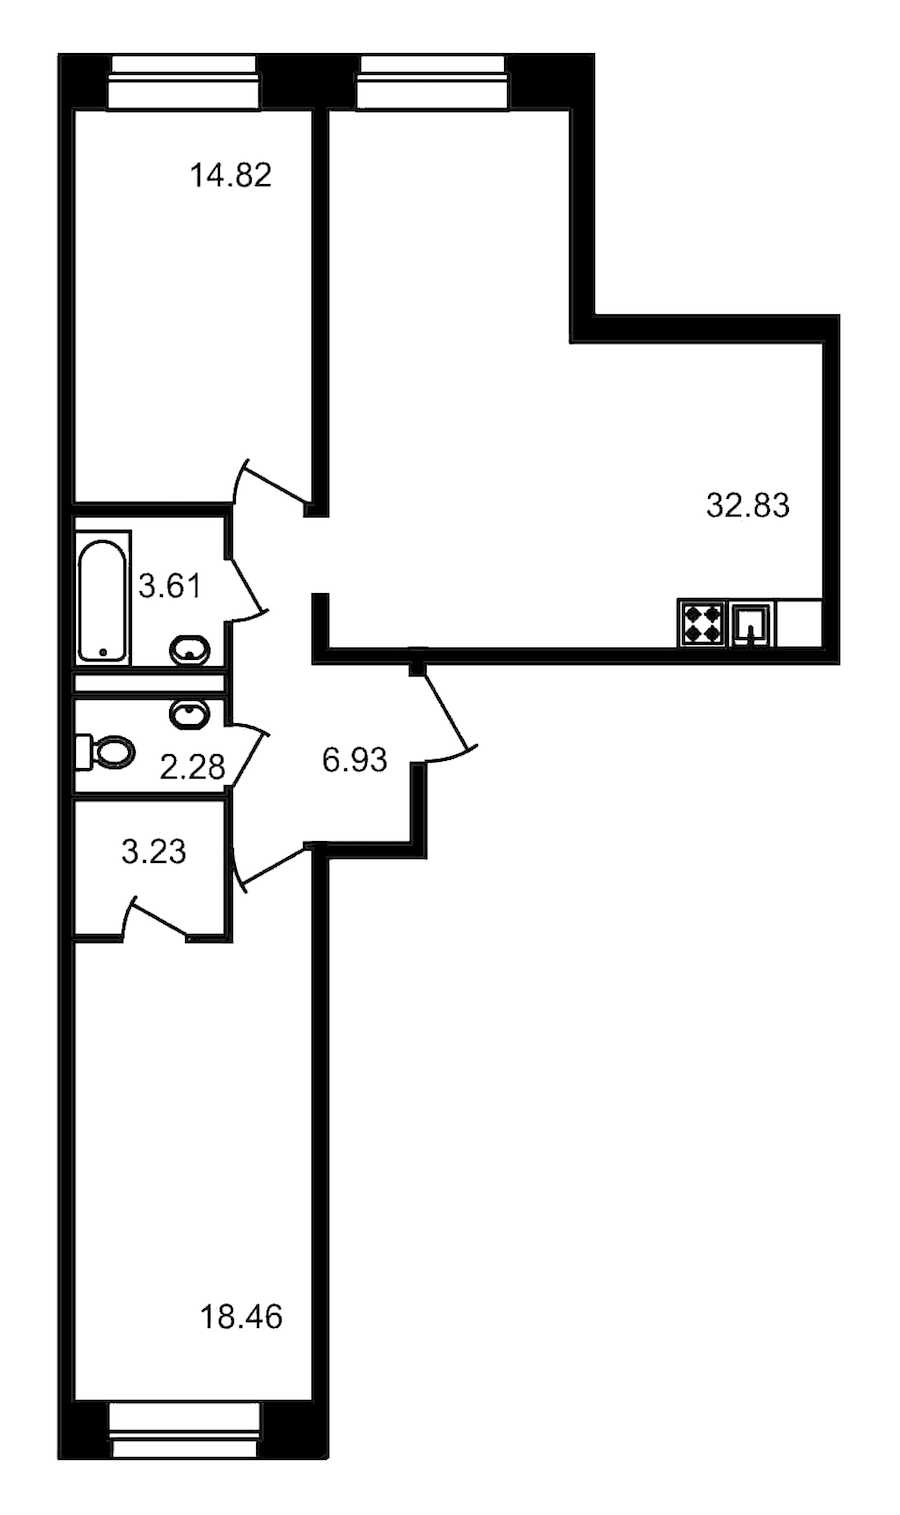 Двухкомнатная квартира в : площадь 82.16 м2 , этаж: 1 – купить в Санкт-Петербурге